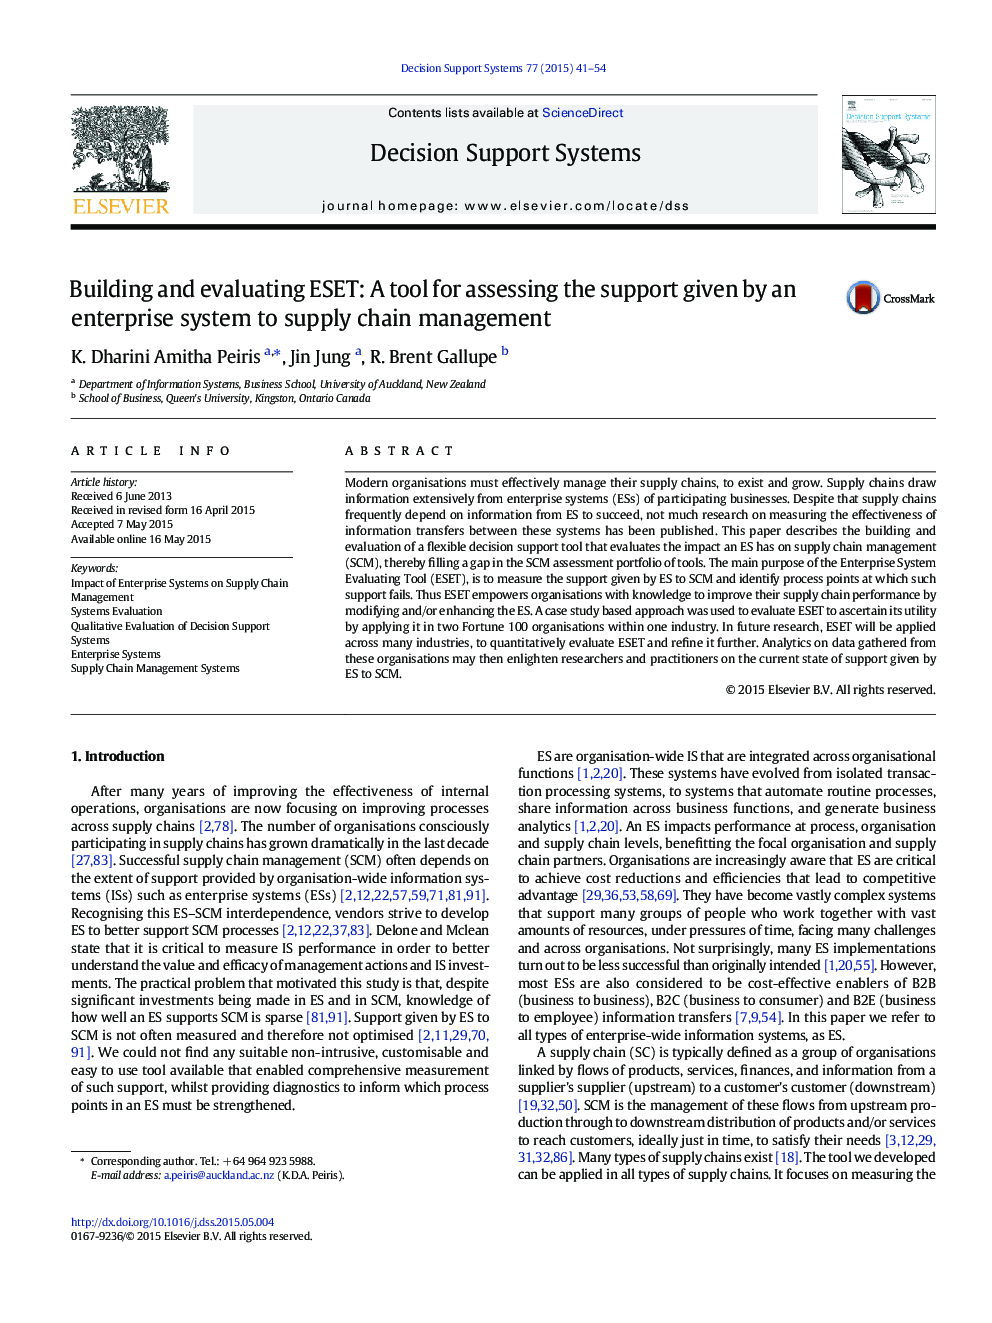 ساخت و ارزیابی ESET: ابزاری برای ارزیابی میزان حمایت یک سیستم اقتصادی از مدیریت زنجیره تامین